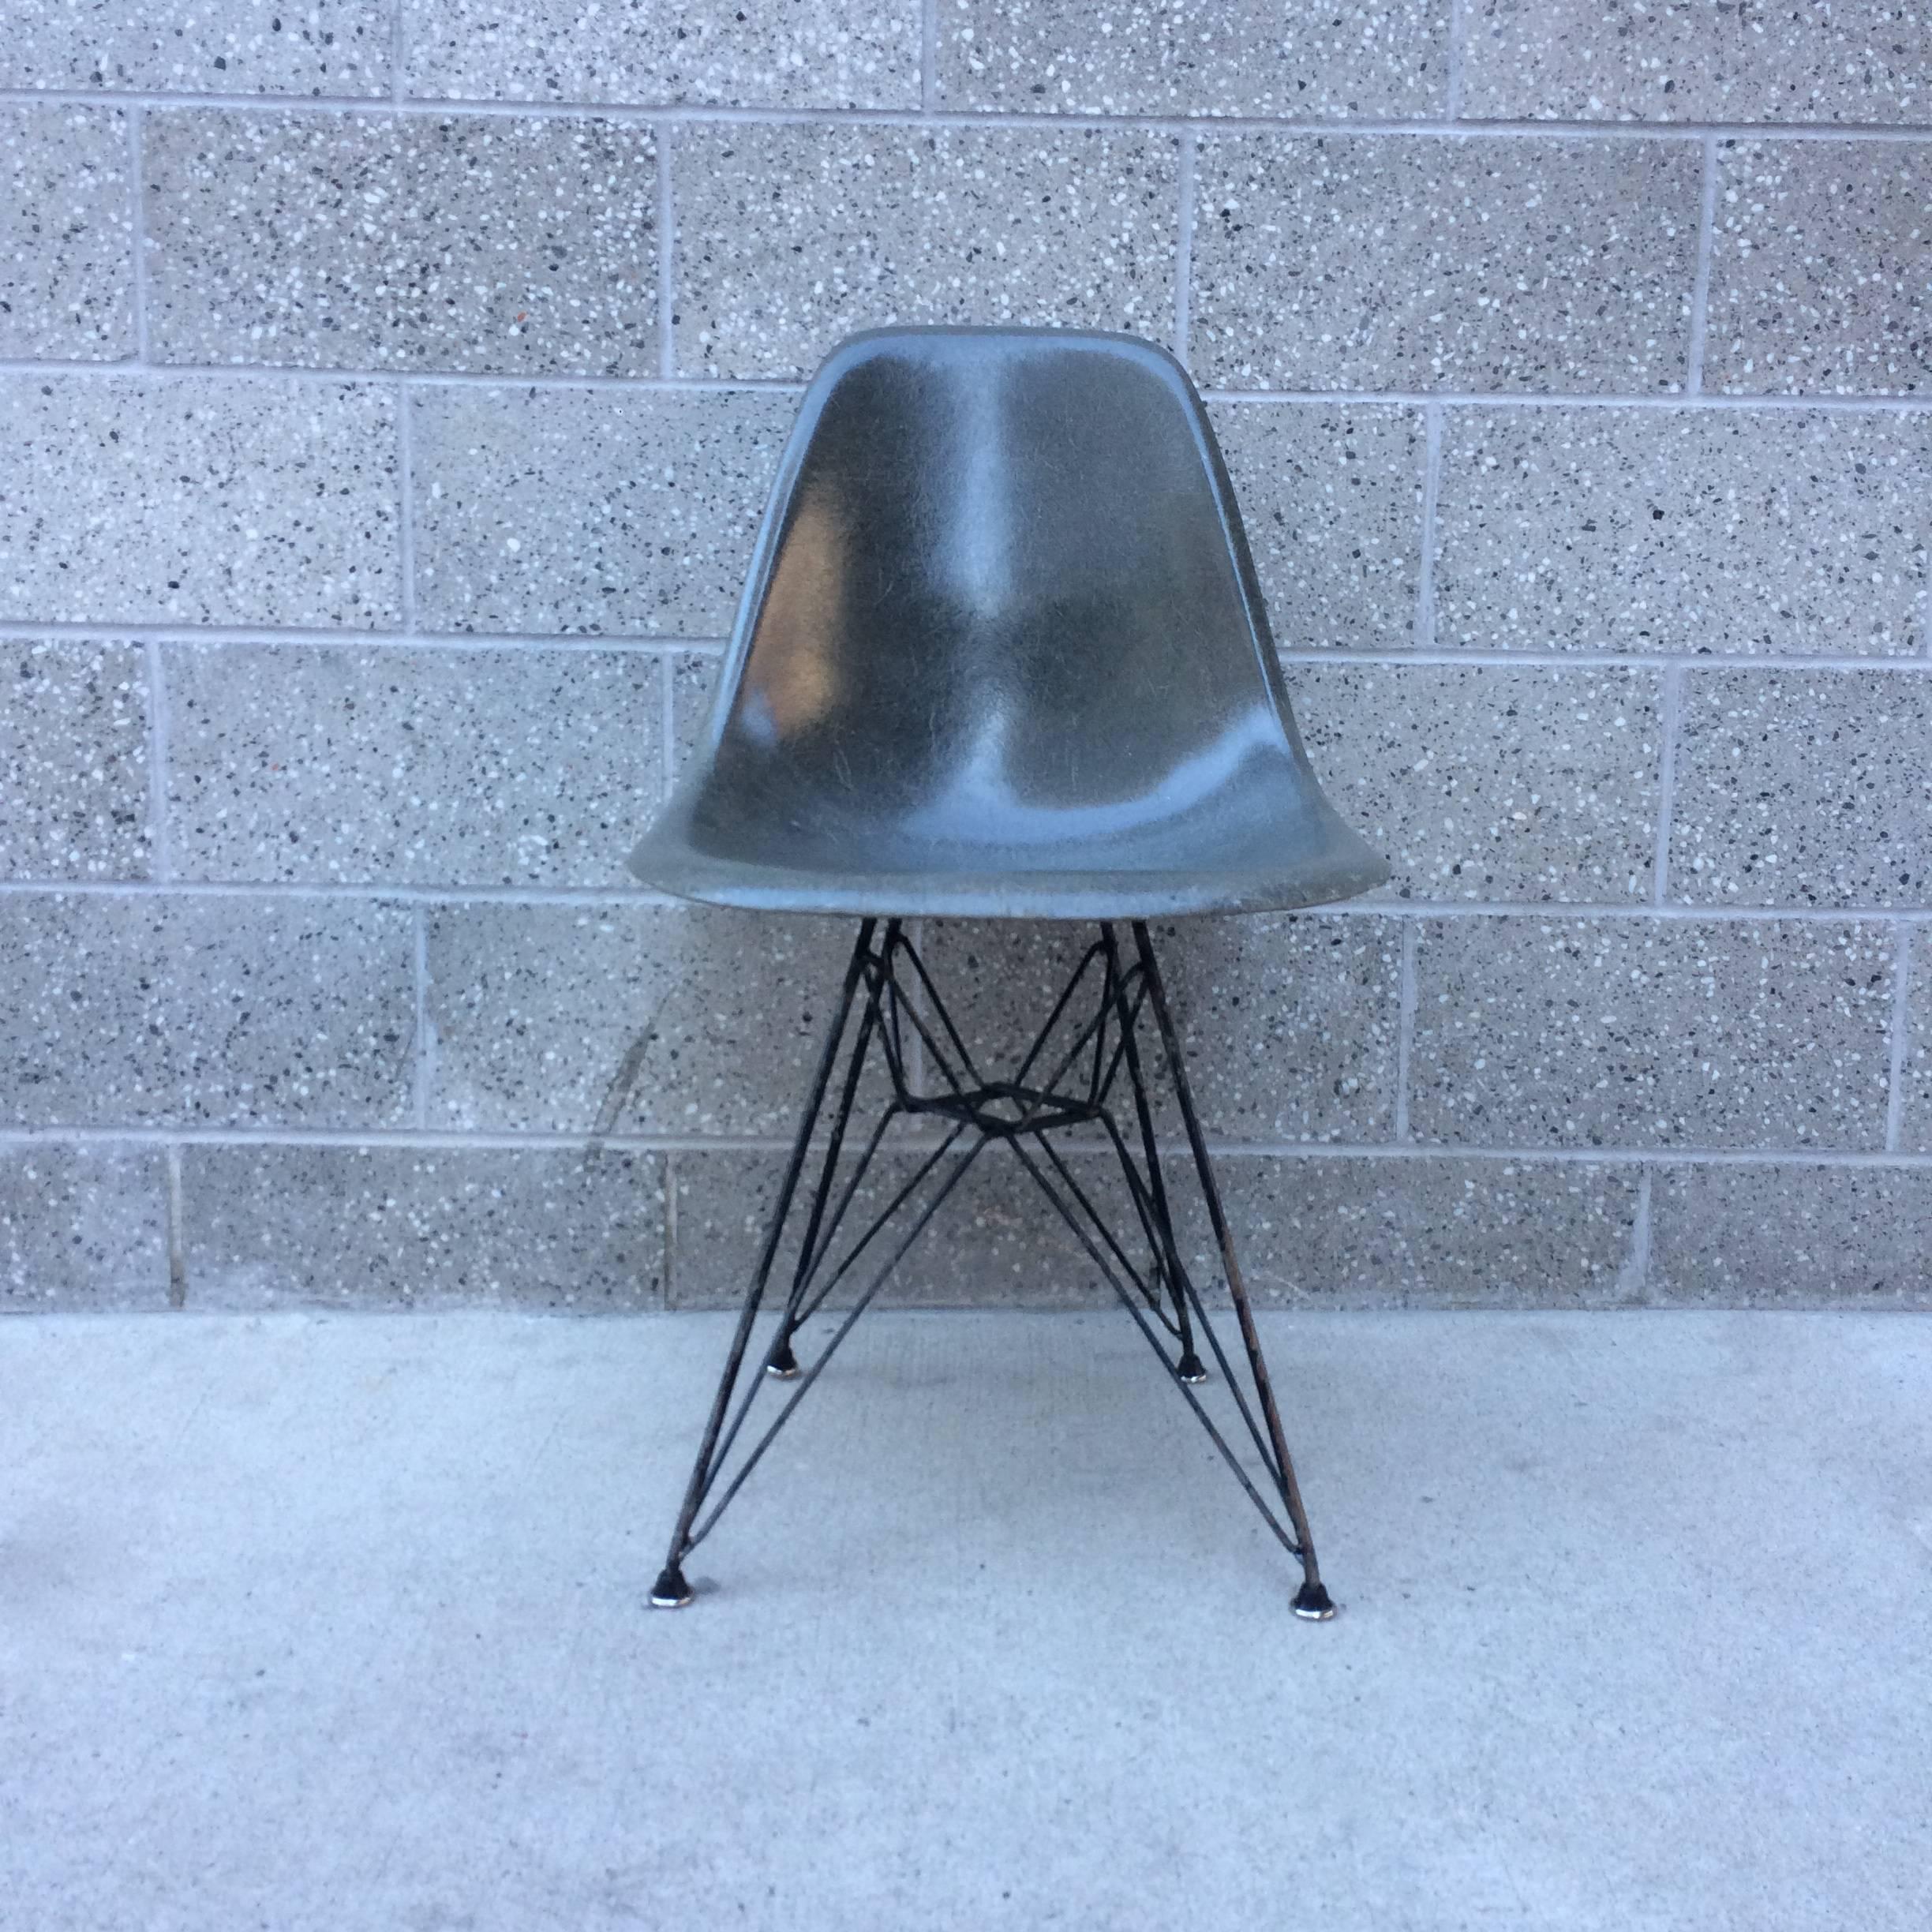 Herman Miller Eames DSR Stuhl aus Fiberglas auf Eiffel-Fußkreuz in Elefantenhaut grau. Der Stuhl stammt aus dem Jahr 1961. Der Sockel hat eine ausgezeichnete Patina und neue Gleiter. Keine strukturellen Probleme. Original-Stoßdämpferbefestigungen.